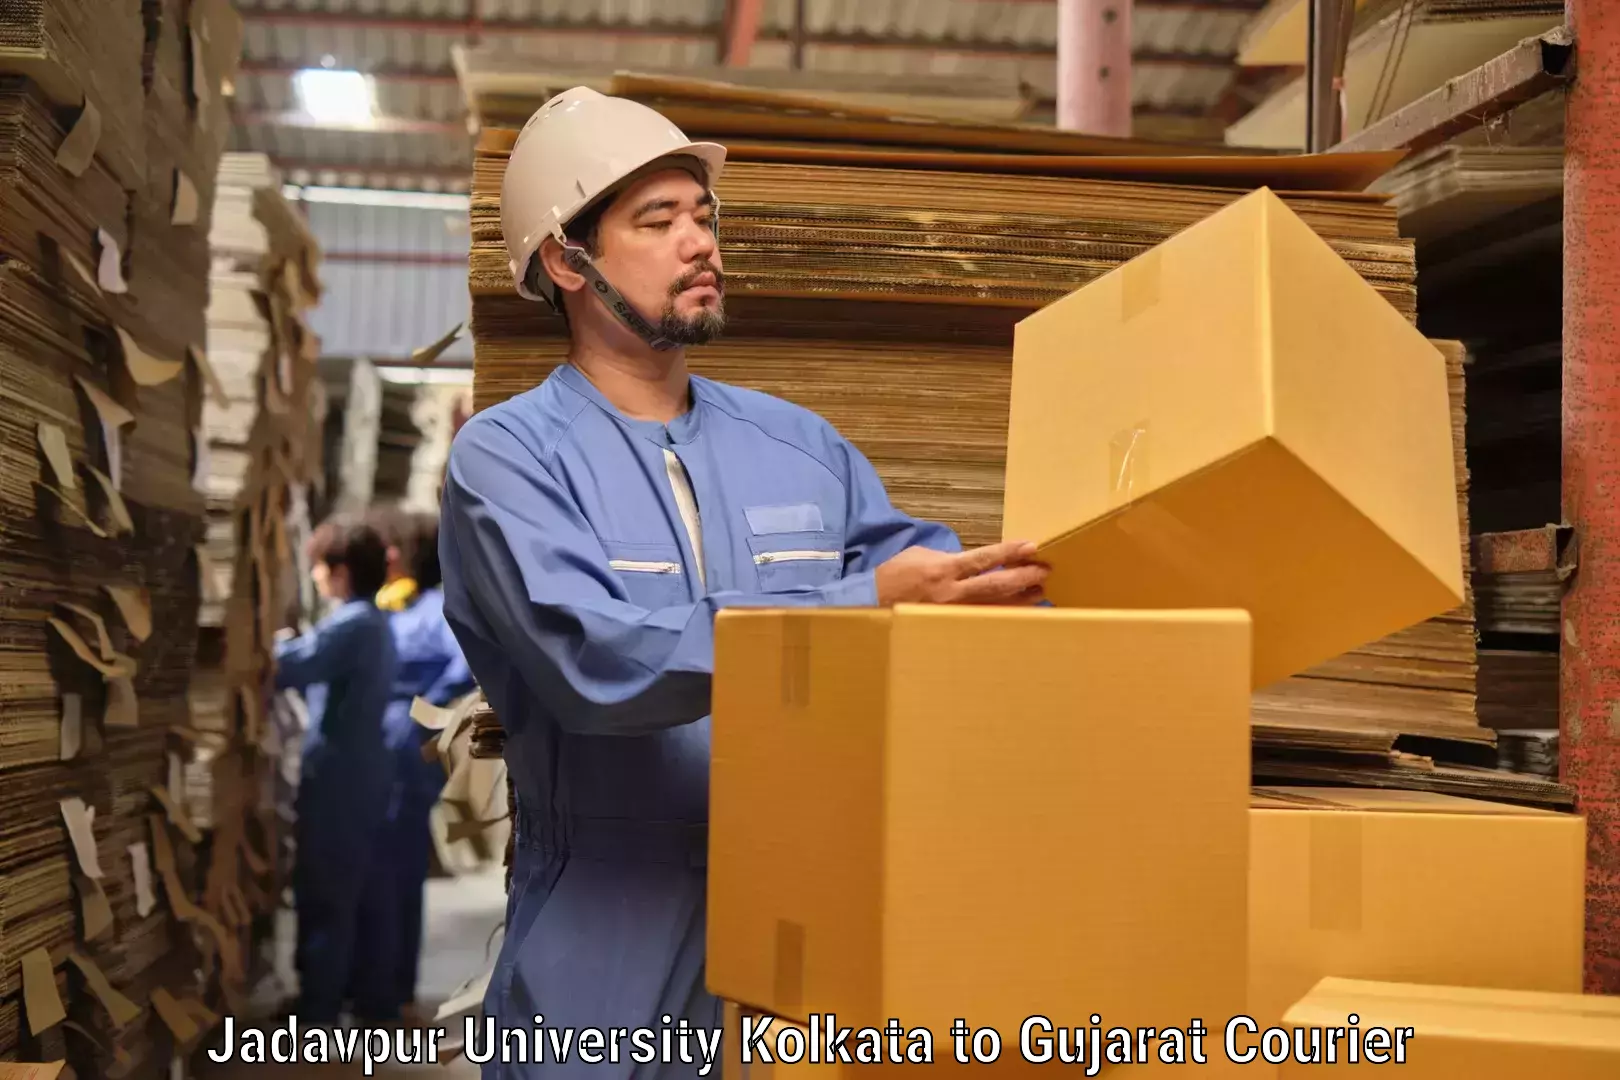 Global parcel delivery Jadavpur University Kolkata to Gujarat